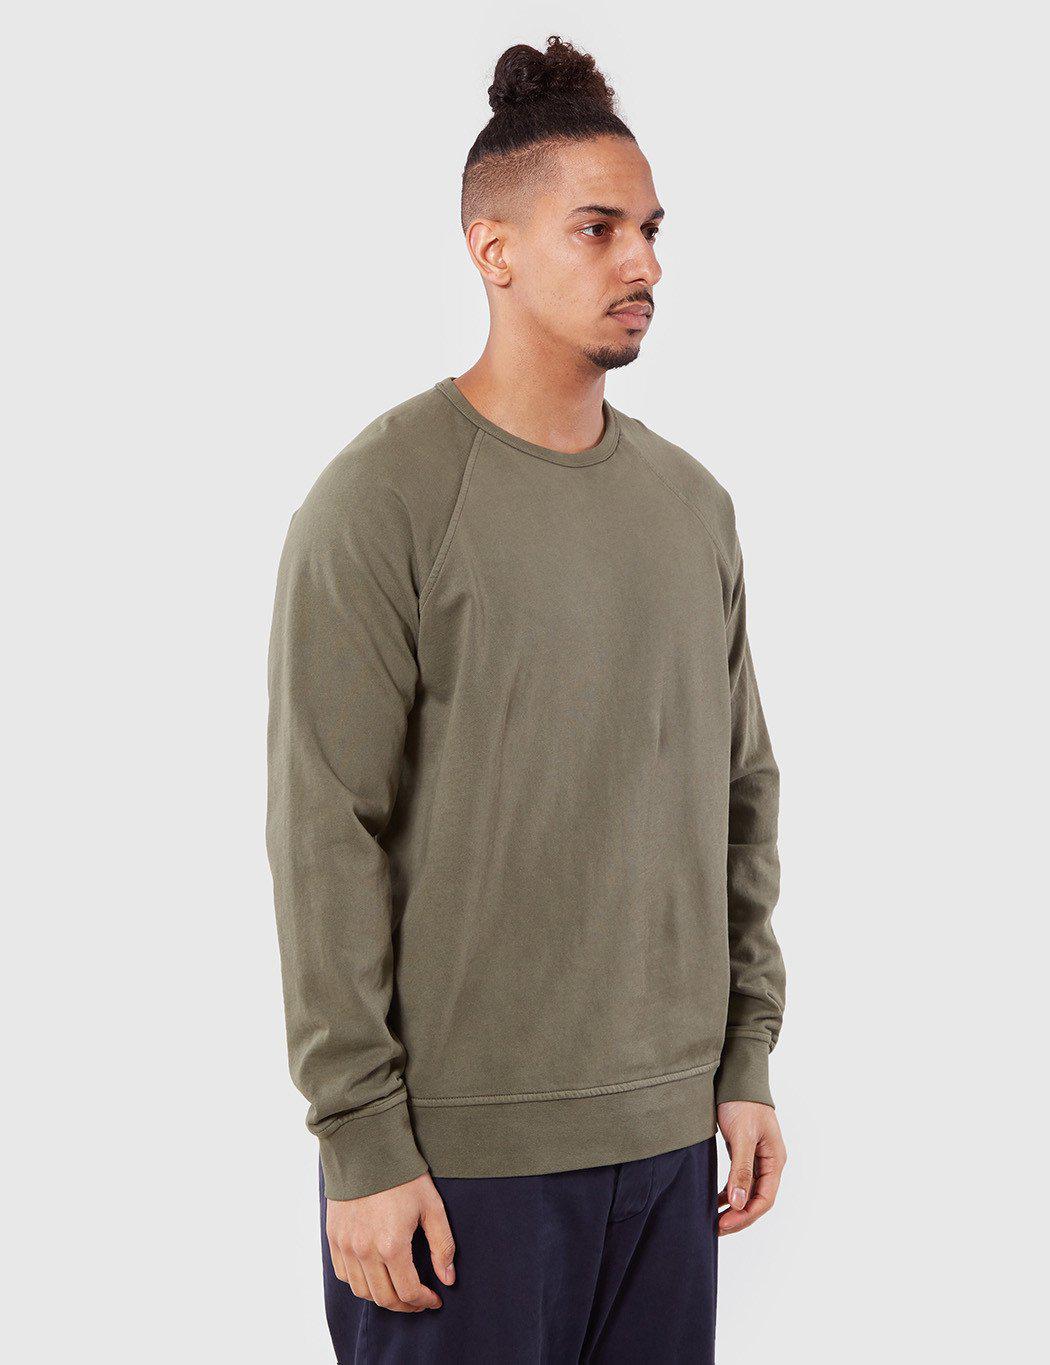 YMC Almost Grown Fleece Sweatshirt in Olive (Green) for Men - Lyst